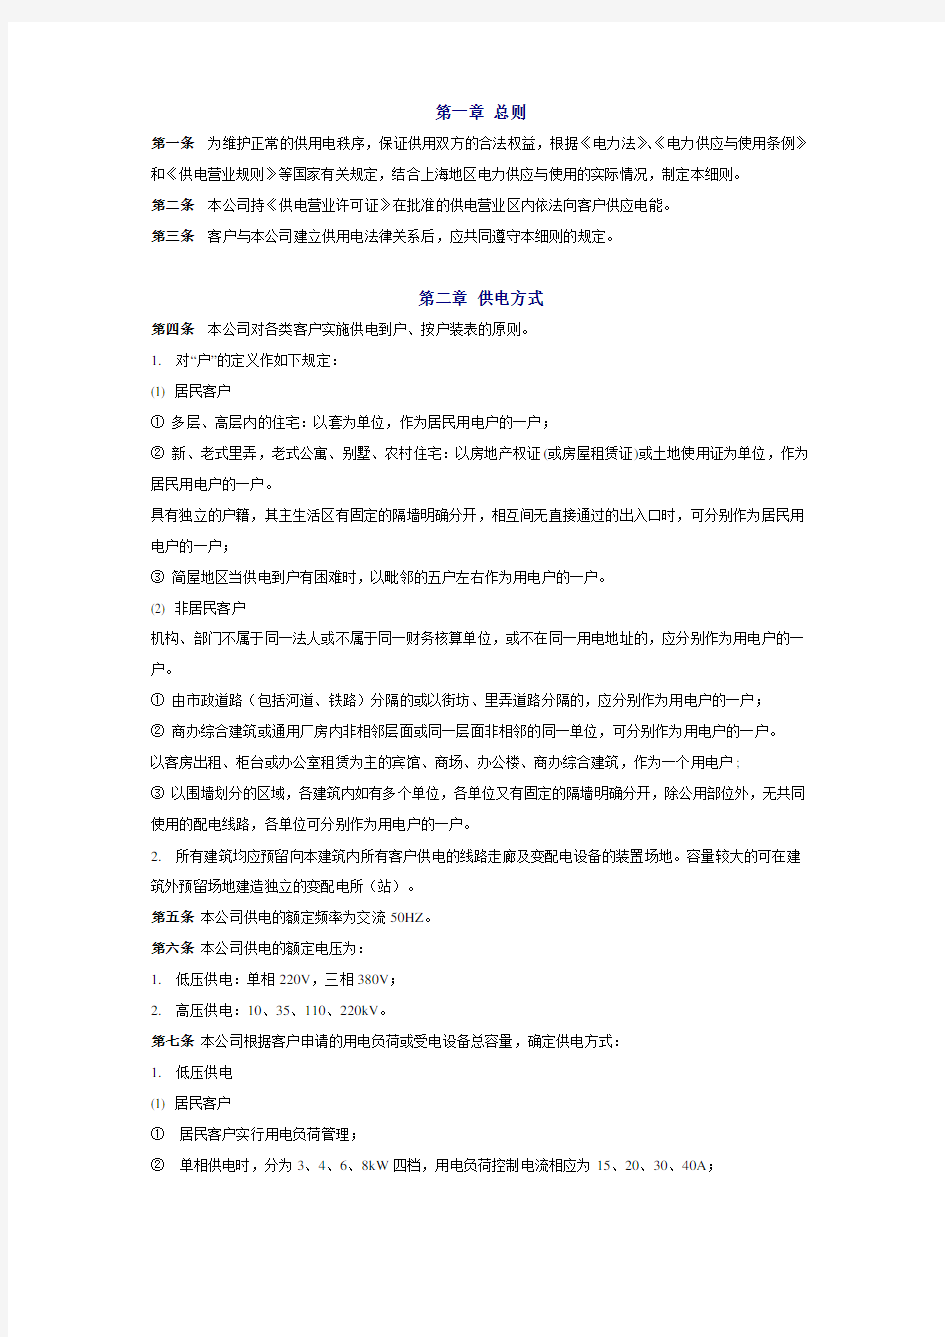 上海市供电营业细则(含附图)